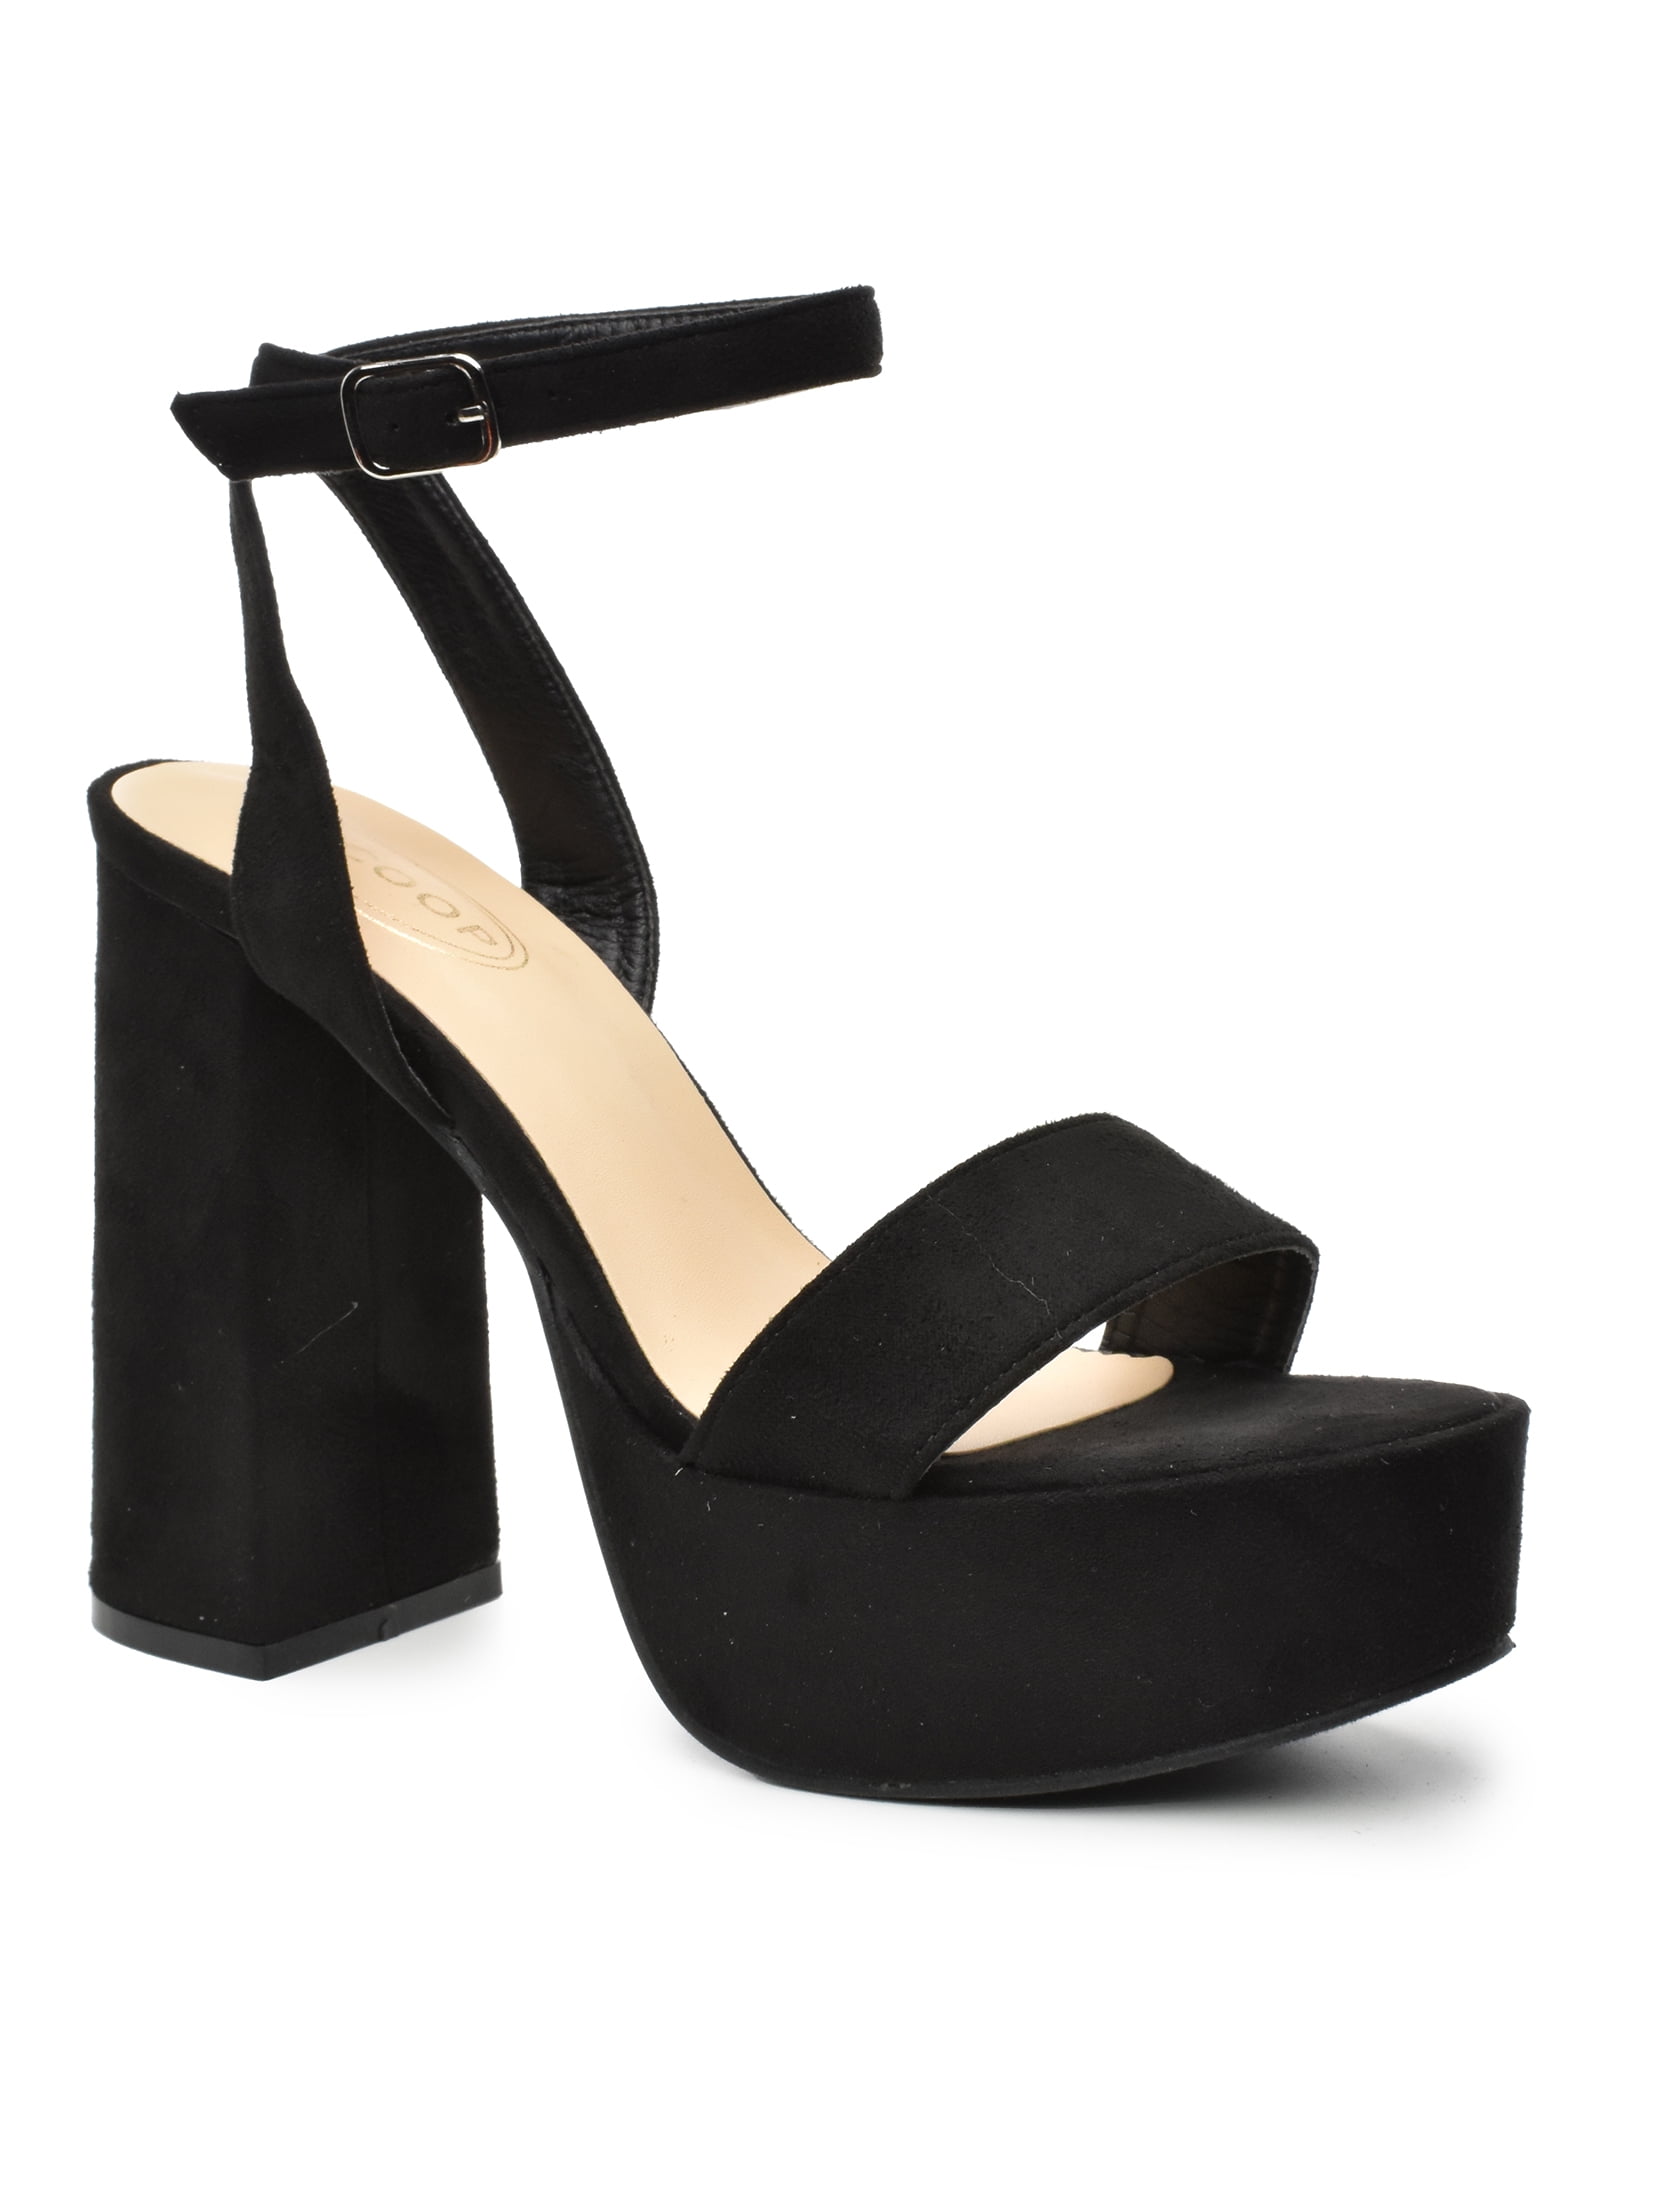 Scoop Women's High Heel Platform Sandals - Walmart.com